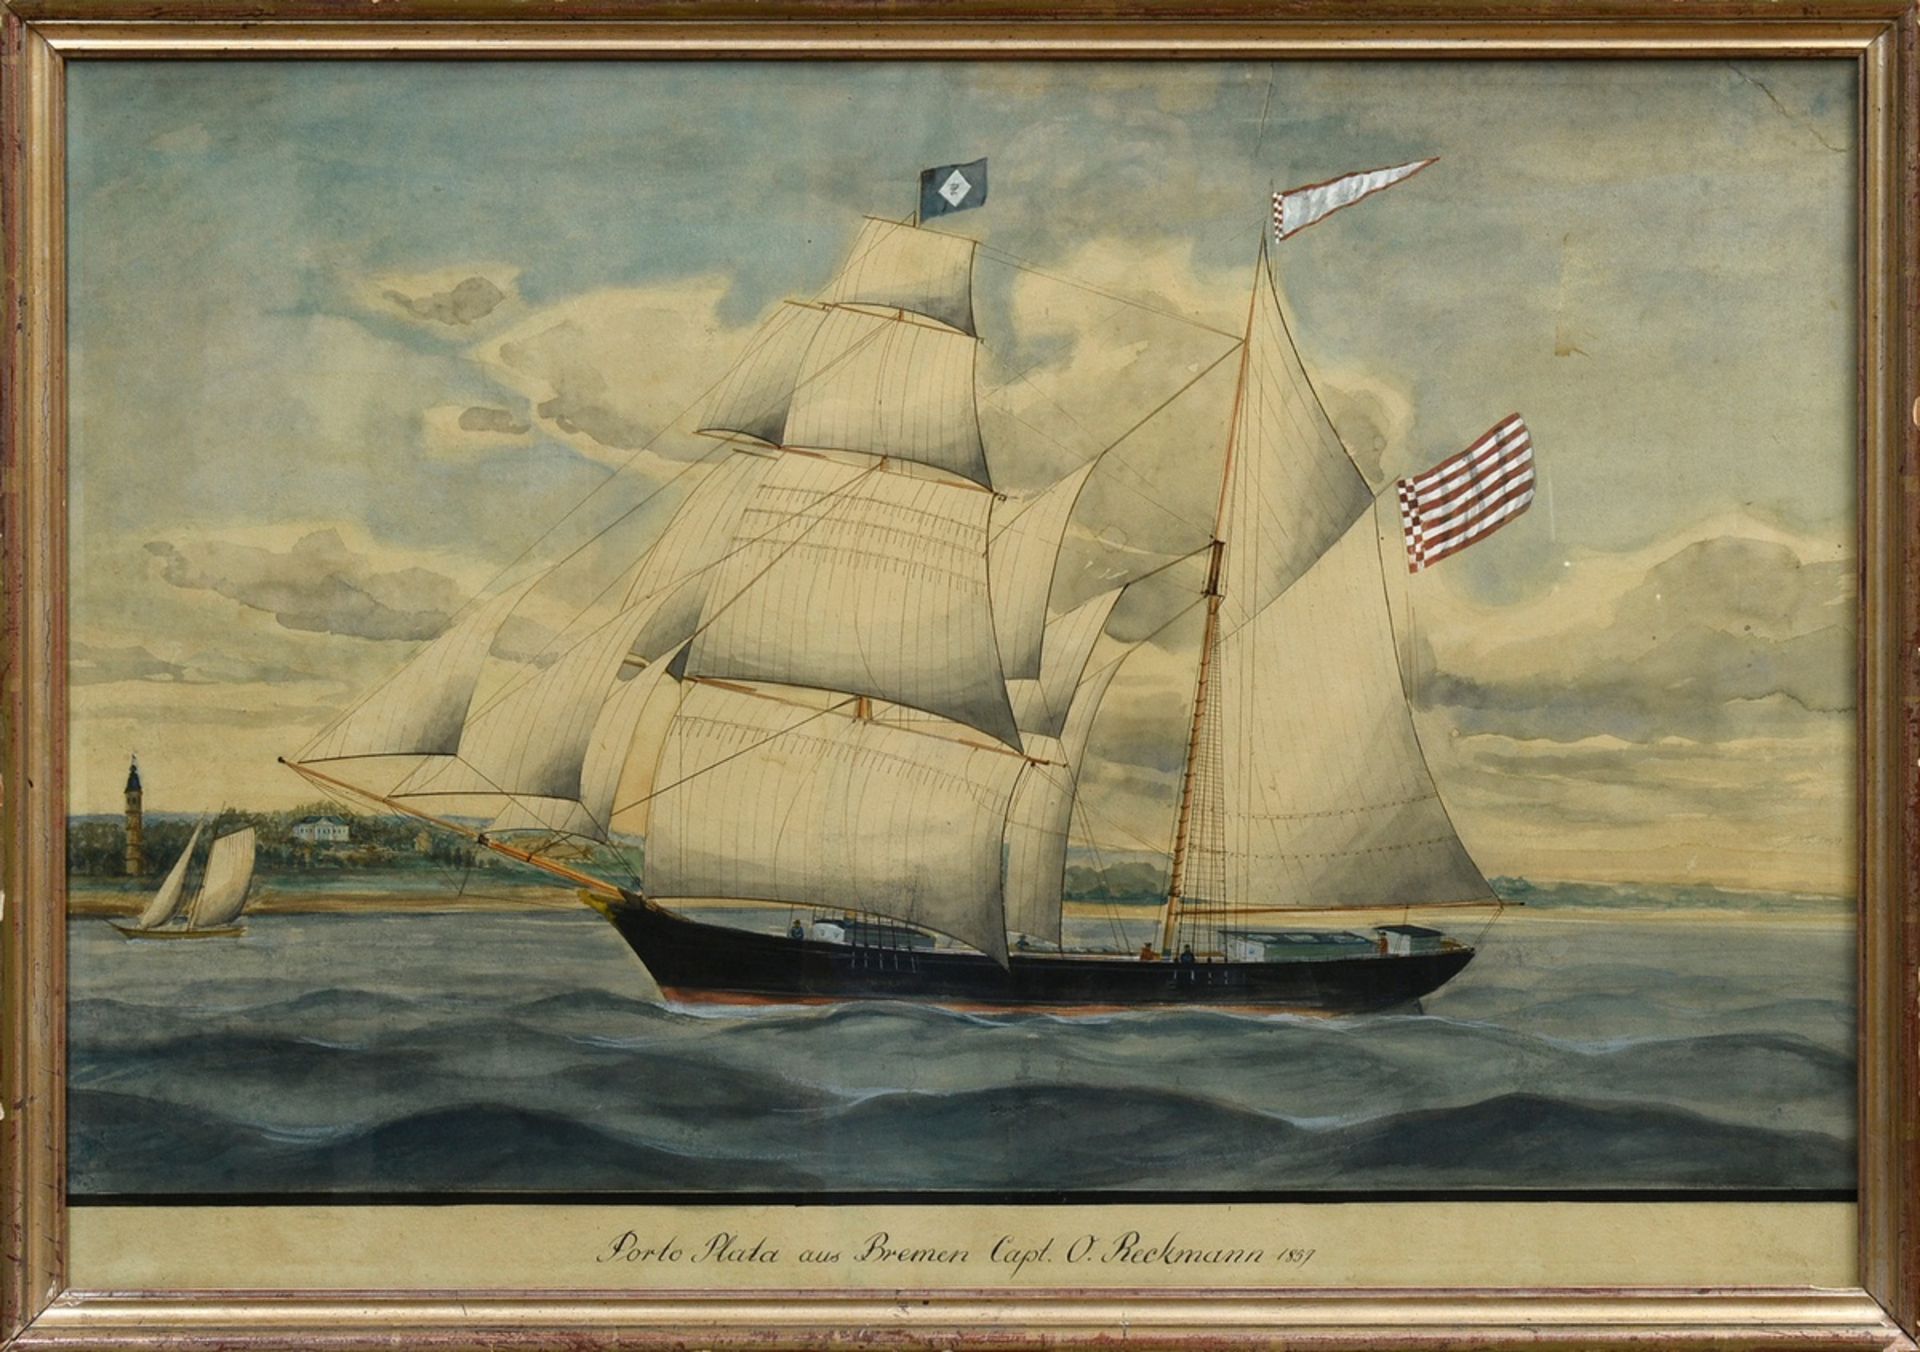 Unbekannter Marinemaler des frühen 20.Jh. "Kapitänsbild Porto Plata aus Bremen Capt. O. Reckmann 18 - Bild 2 aus 3